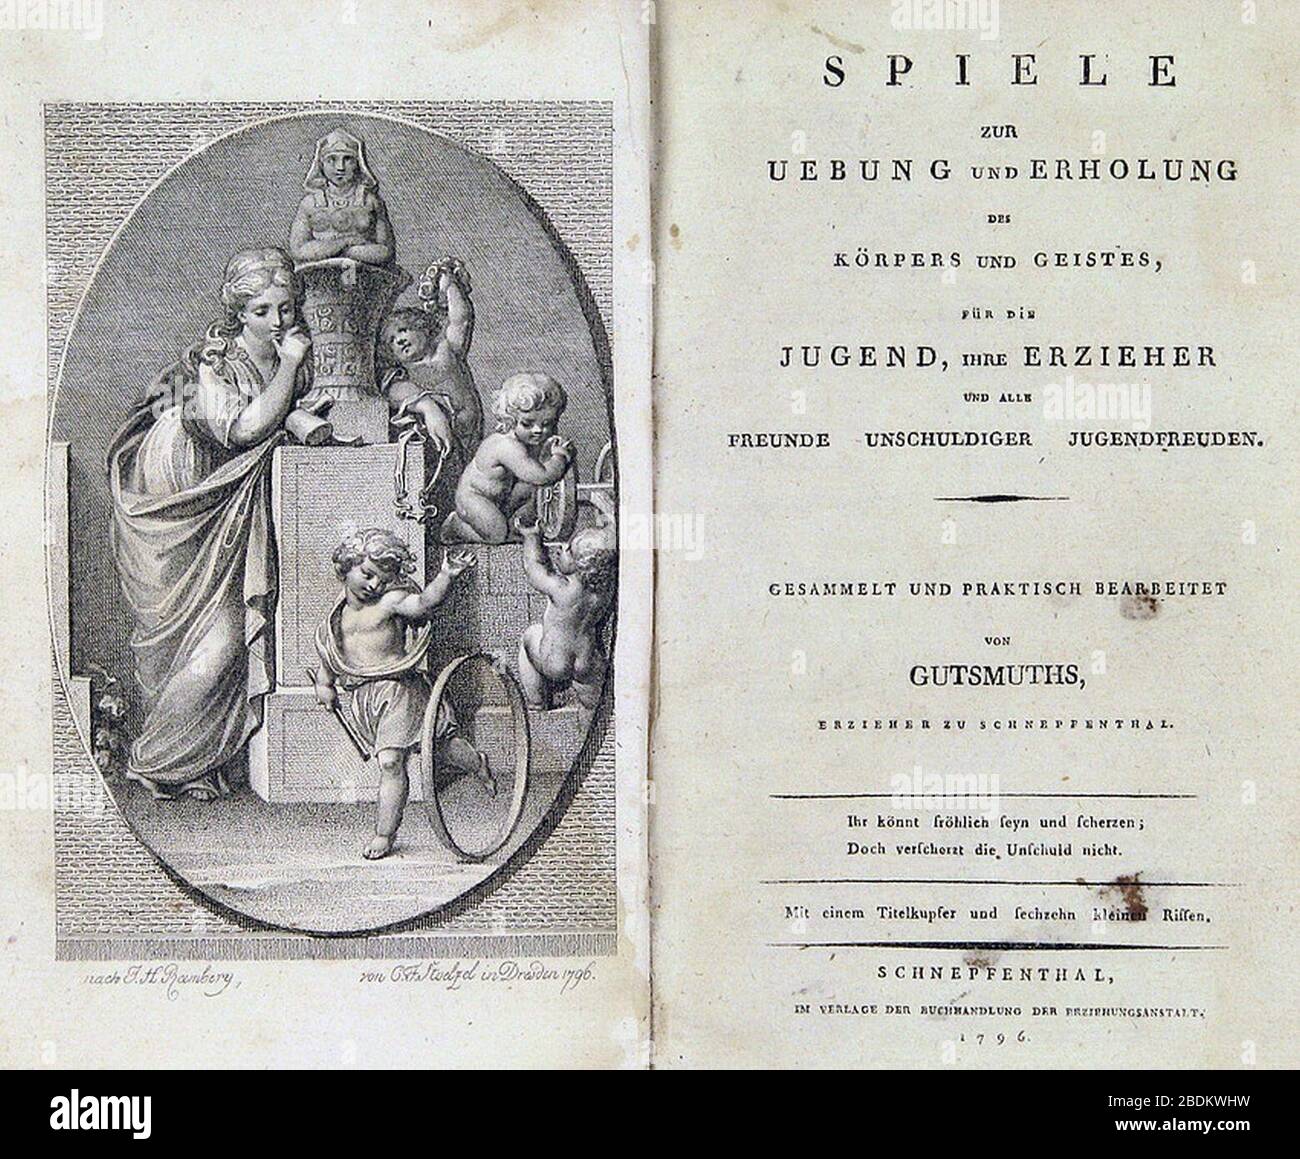 GutsMuths Titel Spiele zur Uebung und Erholung des Körpers und Geistes 1796. Stock Photo